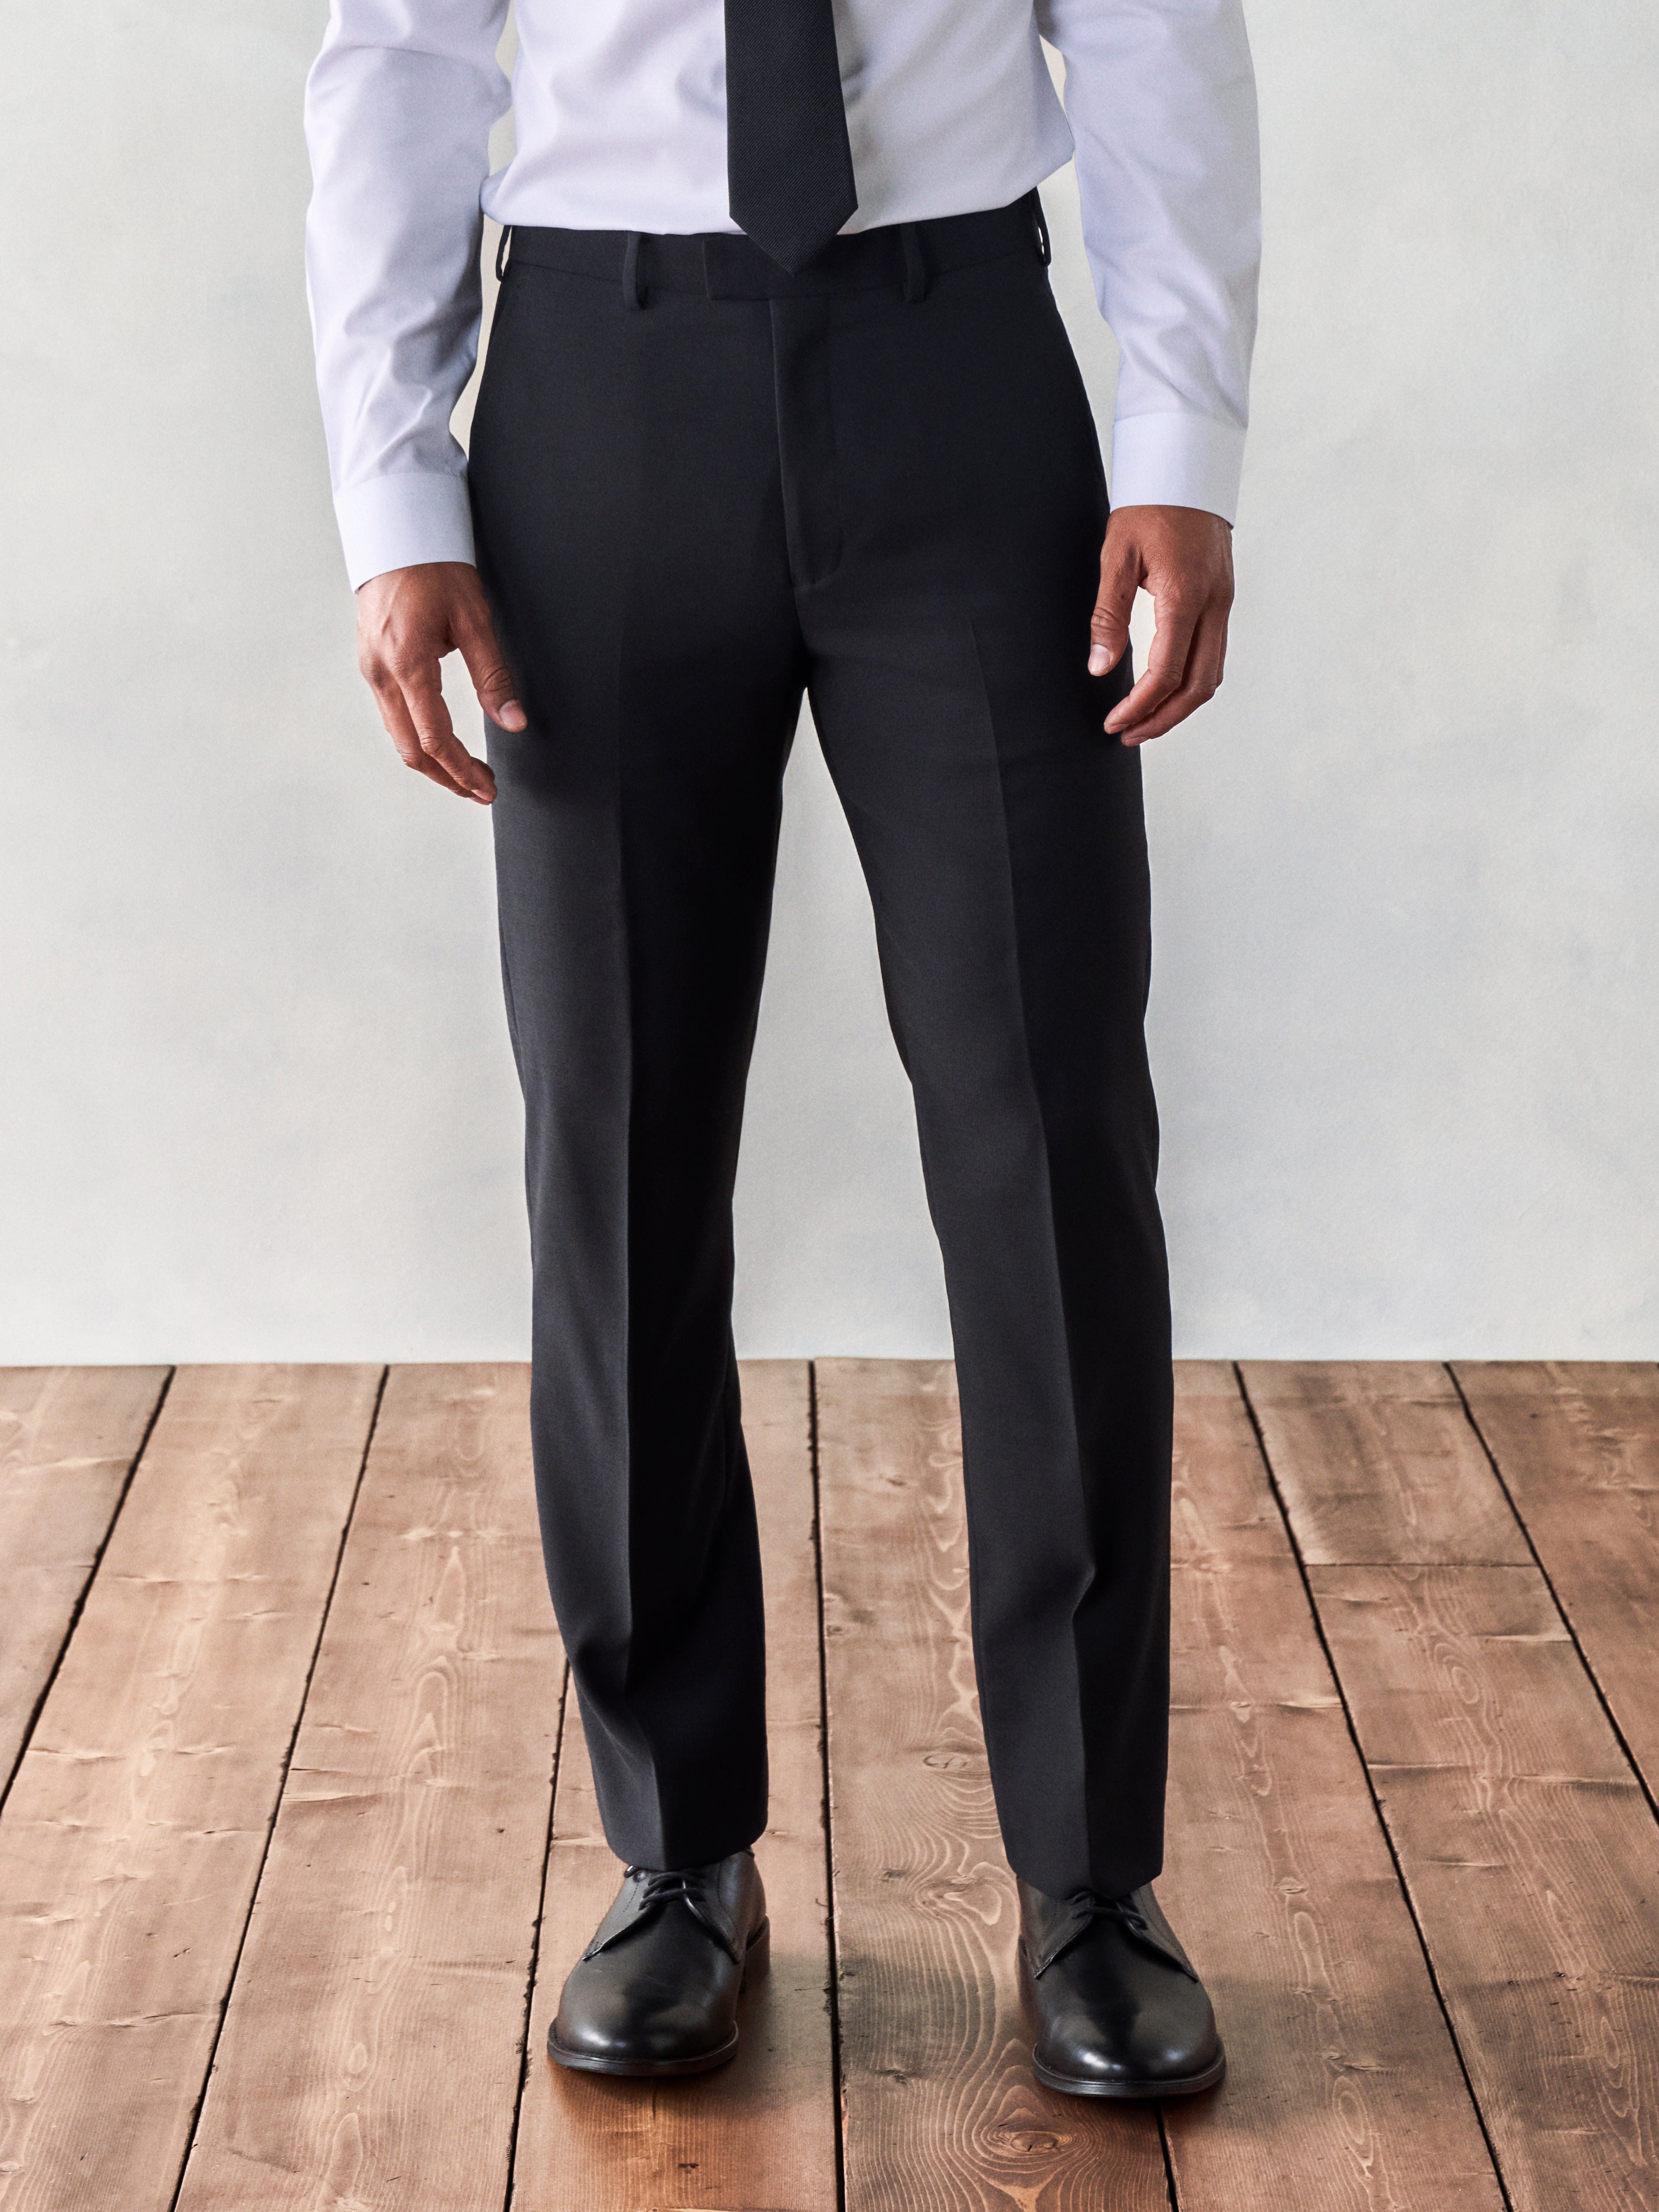 Shop Men's Suits & Suit Separates | Designer Suits | Brooks Brothers